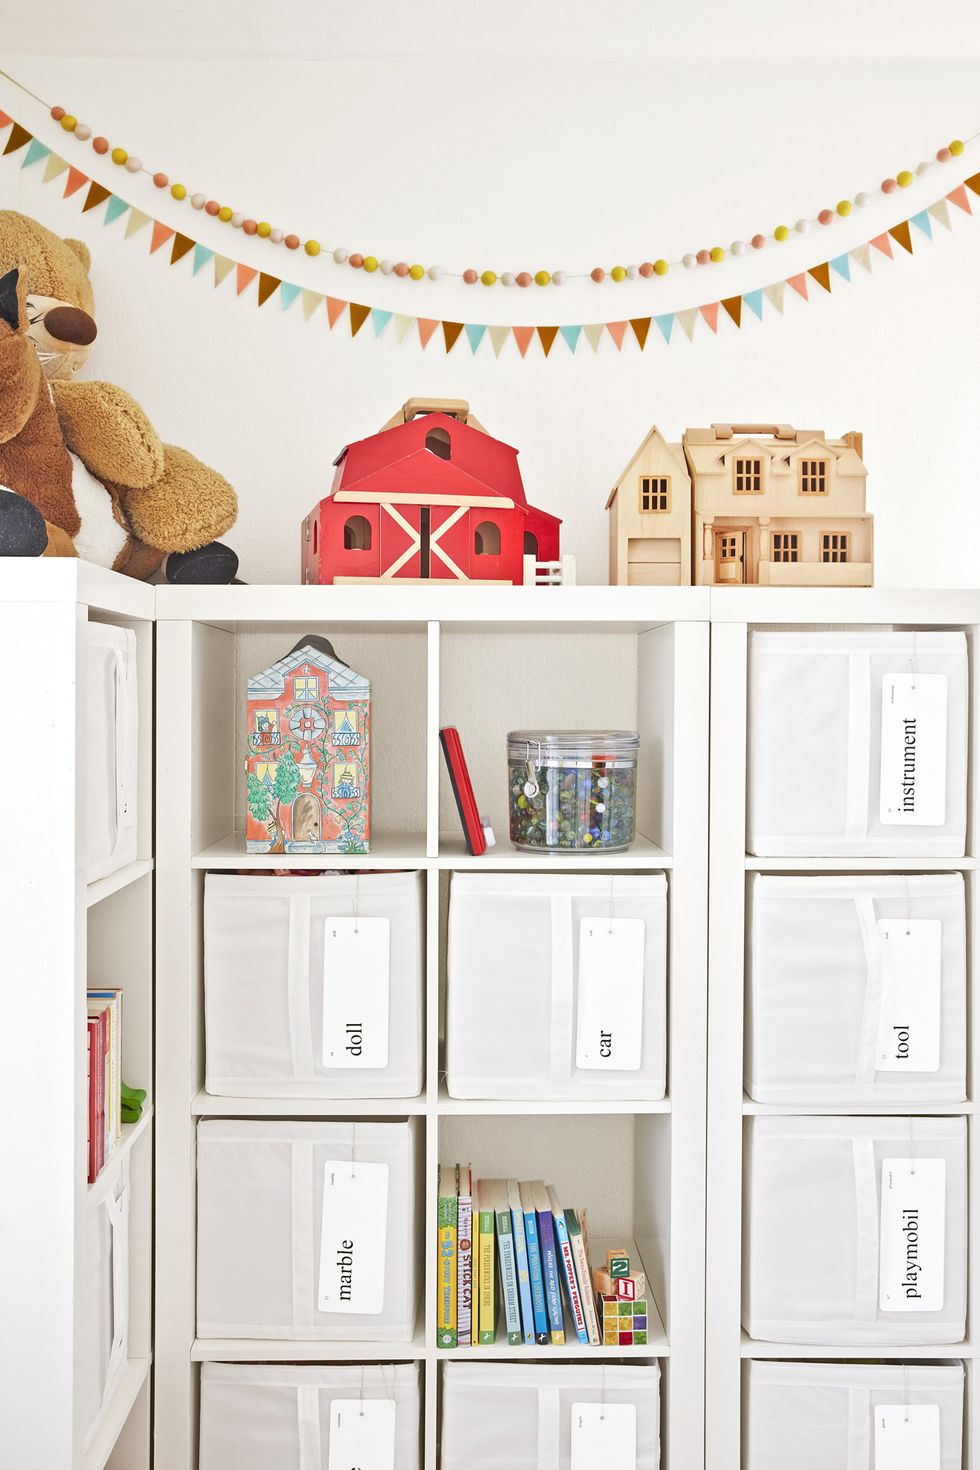 30 Best Toy Storage Ideas - DIY Kids' Room Organizer Ideas